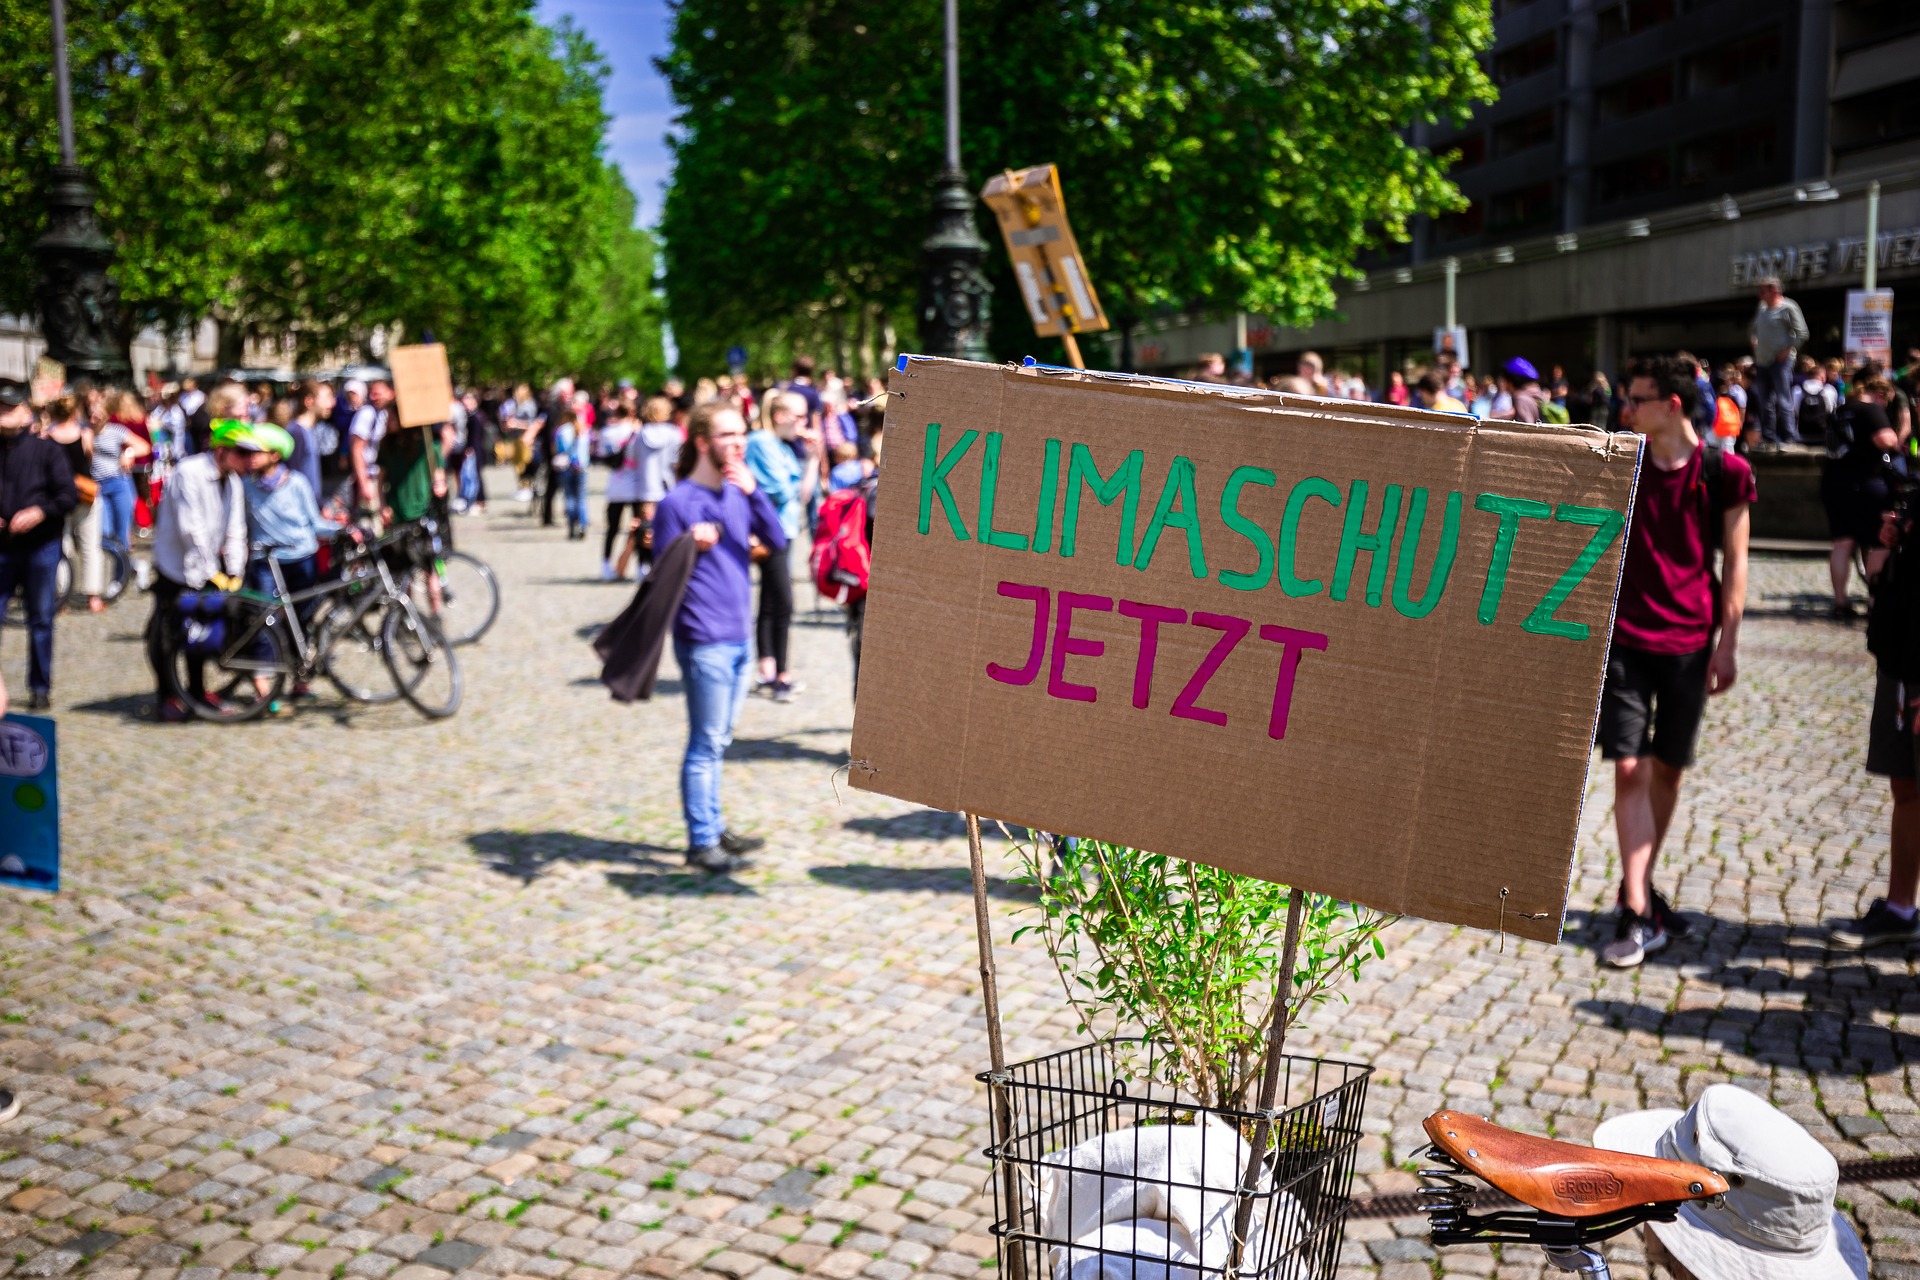 Bild einer Demo für mehr Klimaschutz  Klimaschutz_DominicWunderlich_pixabay.jpg